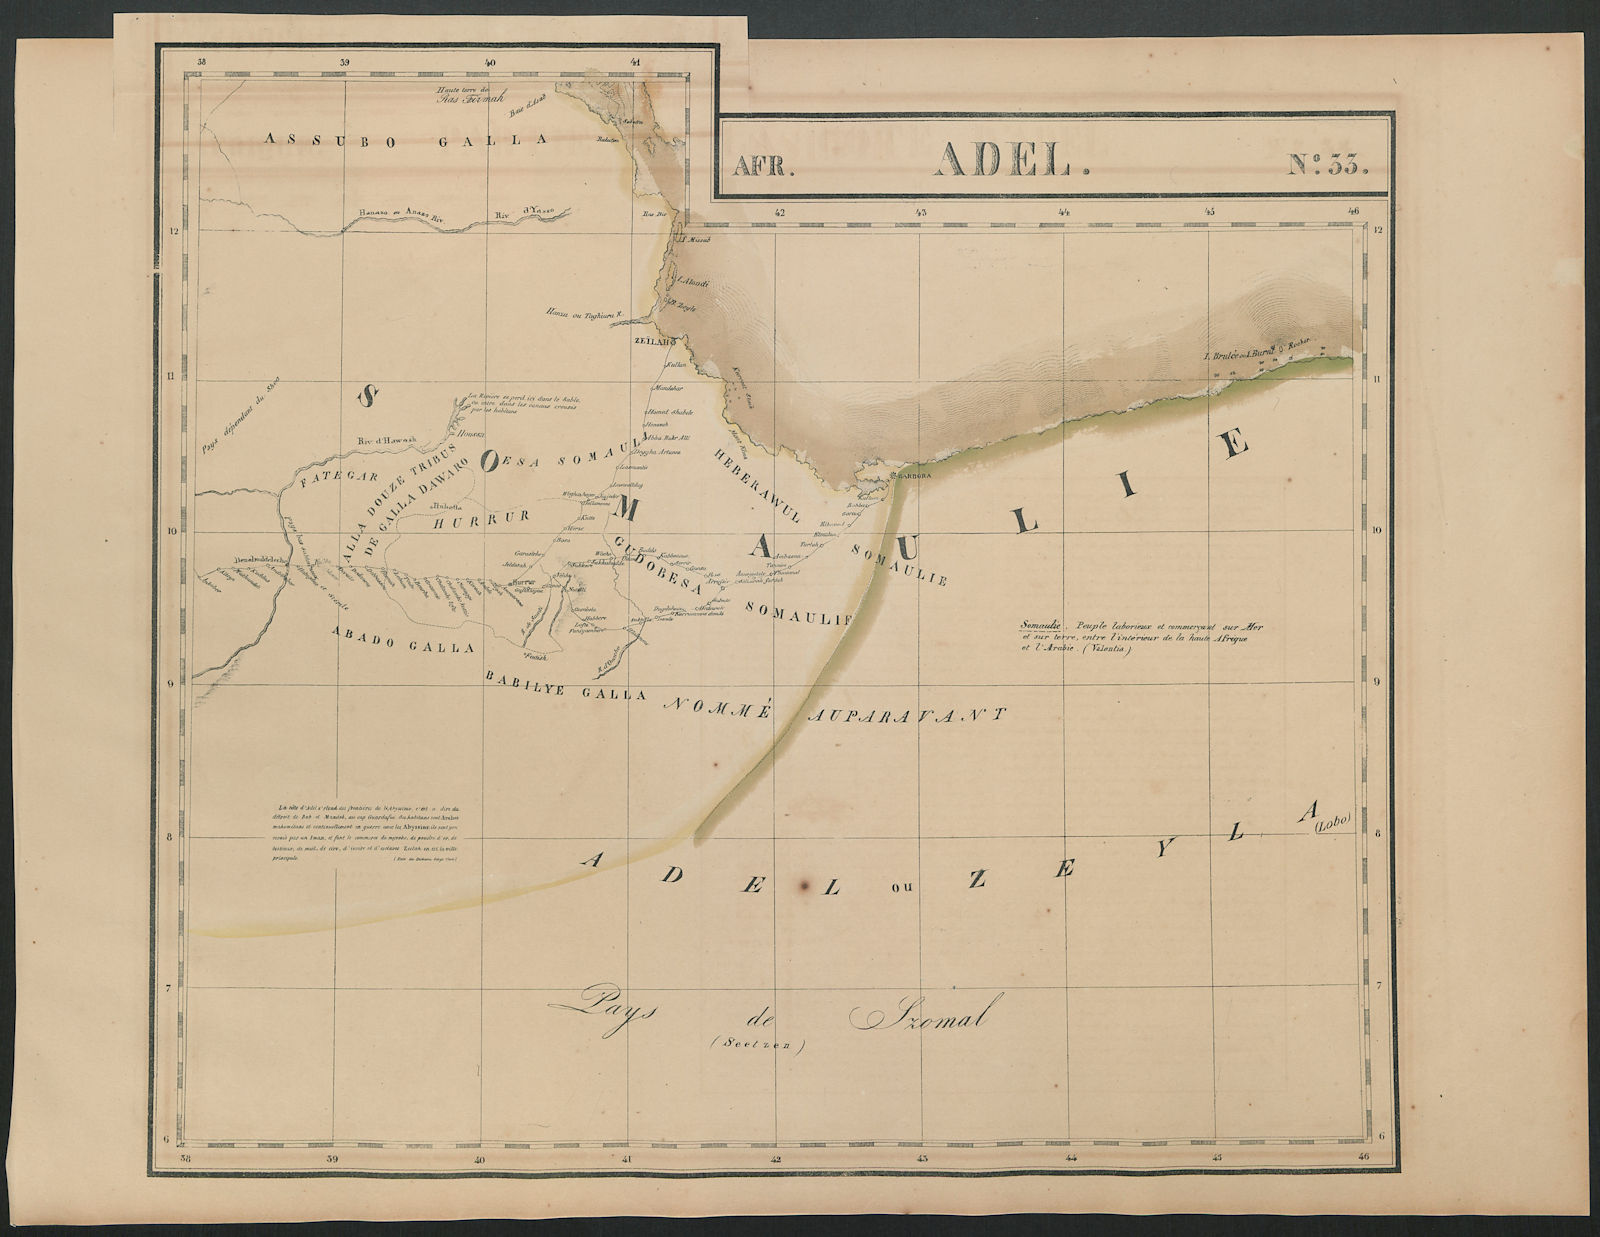 Afrique. Adel #33. Ethiopia Djibouti Somalia Eritrea. VANDERMAELEN 1827 map